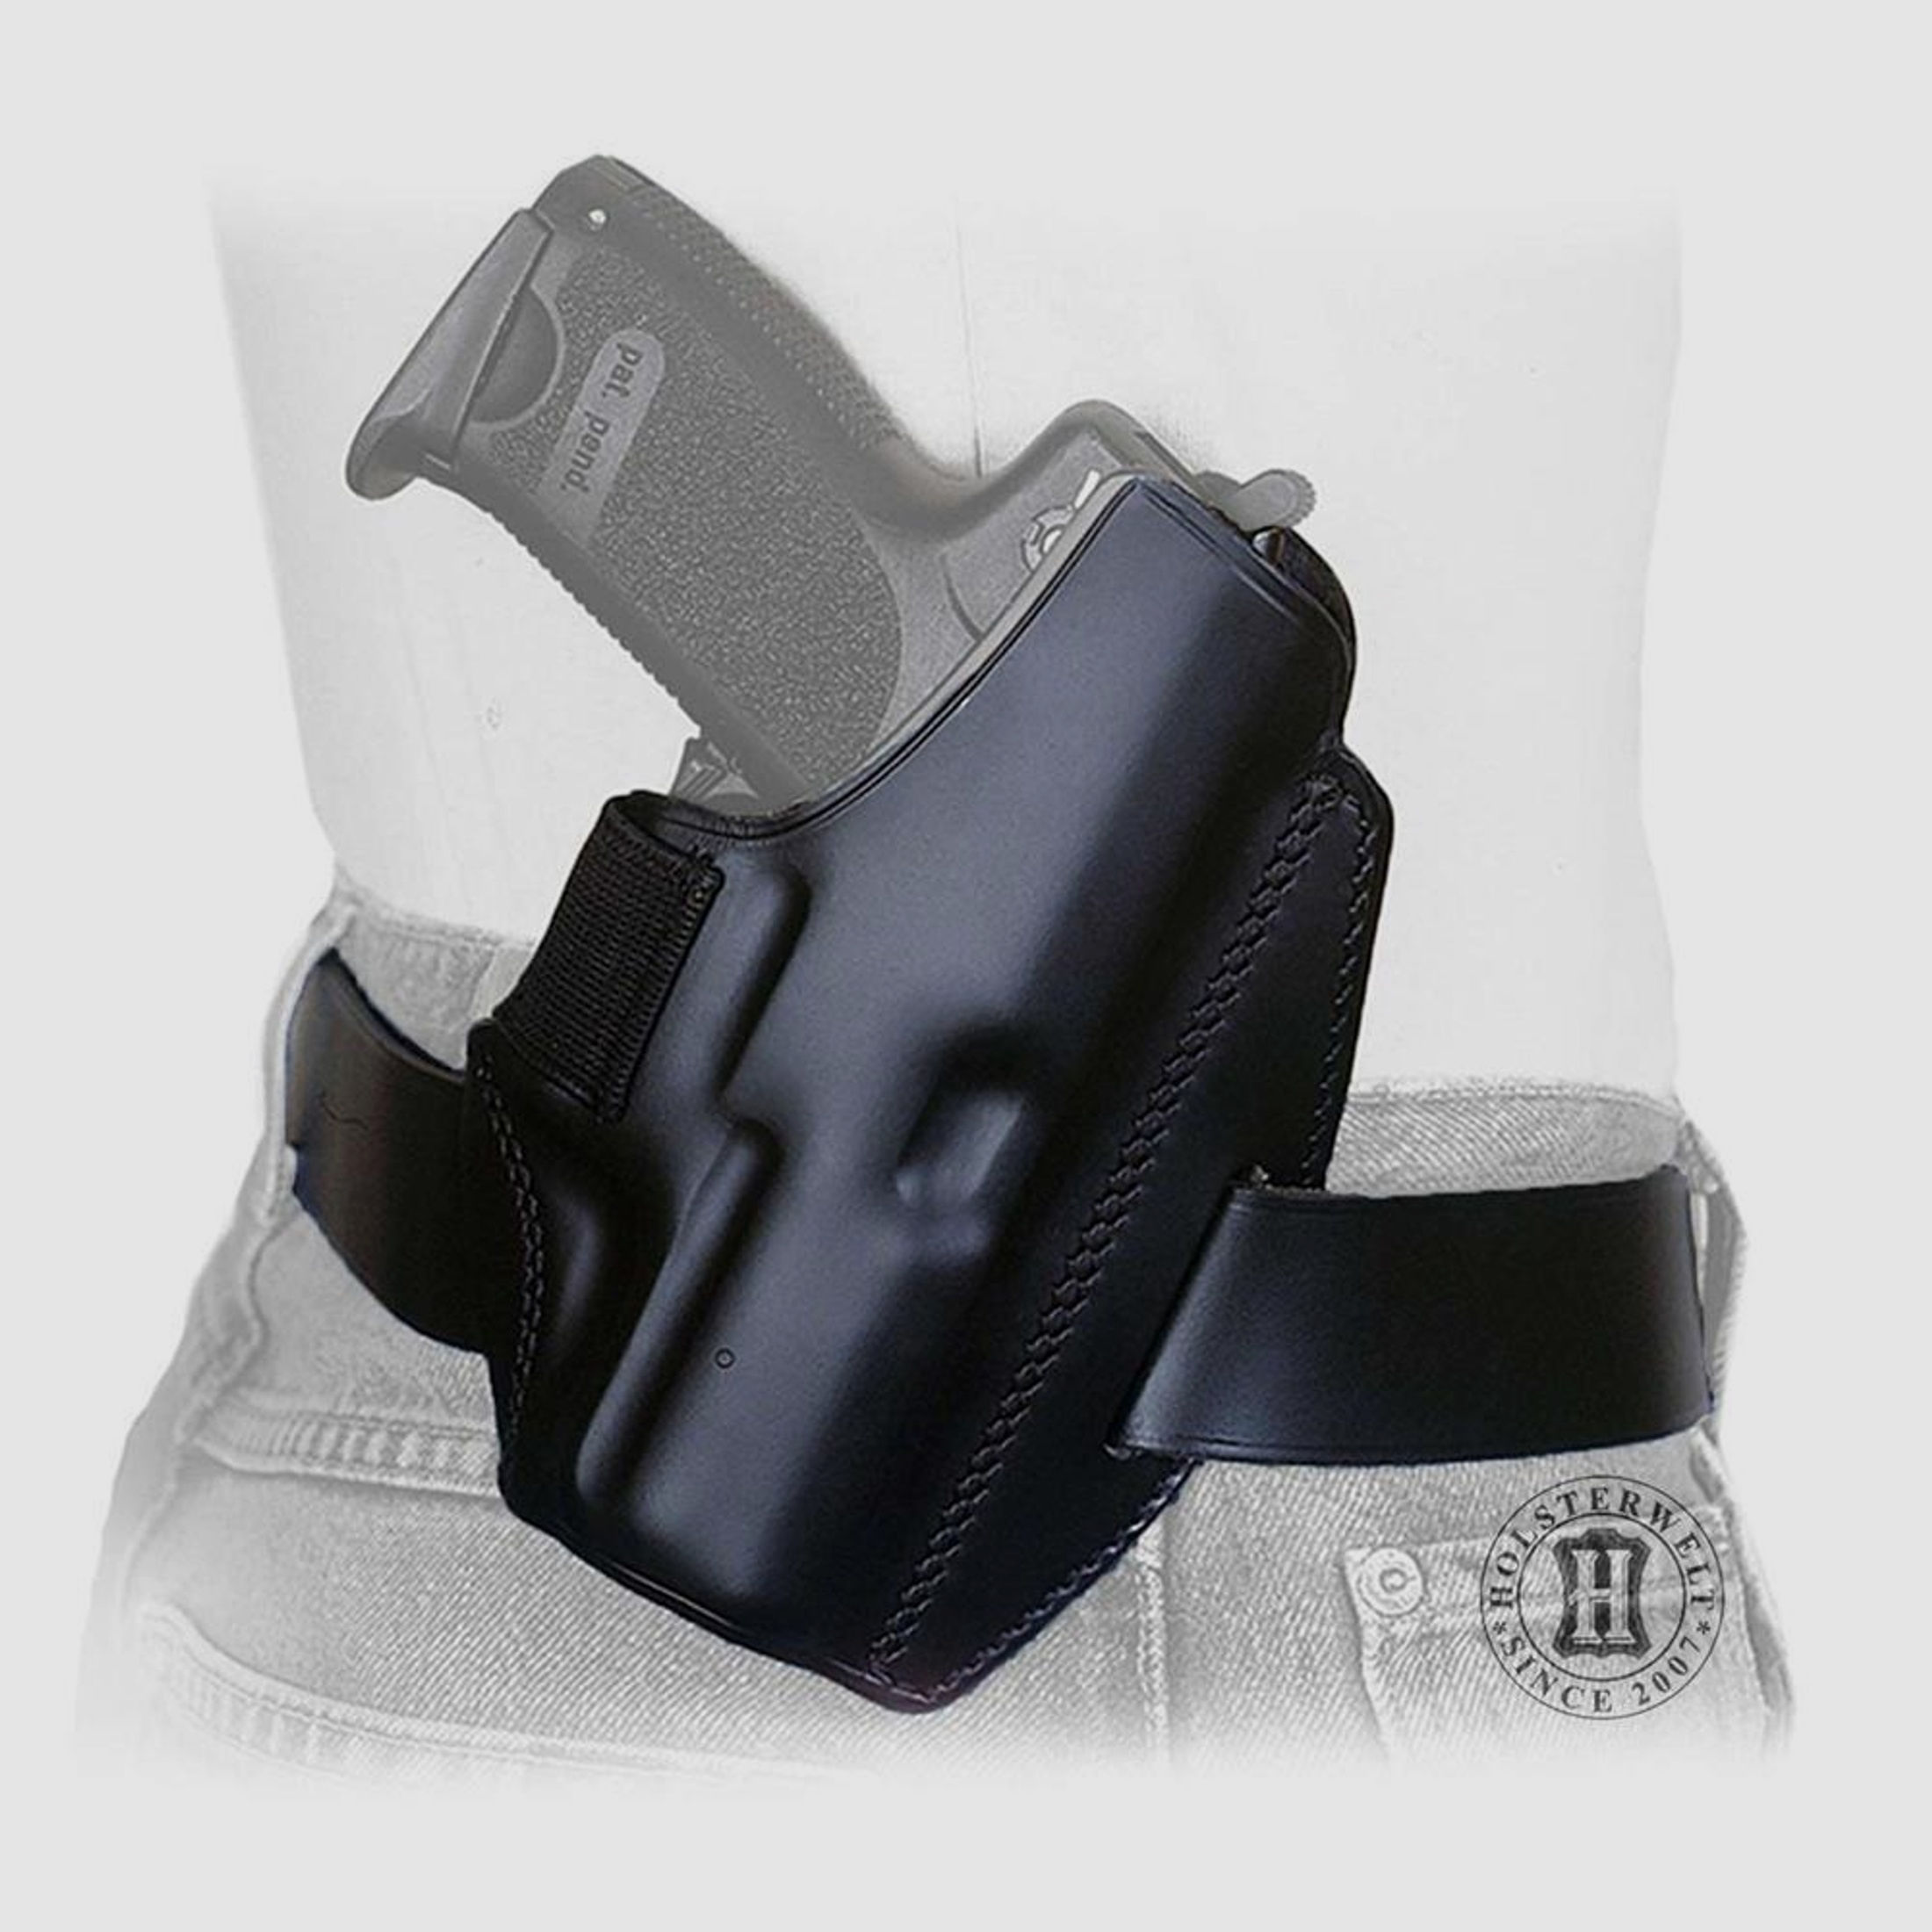 Gürtelholster QUICK DEFENSE SIG SAUER P225 / P228 / P229 Linkshänder